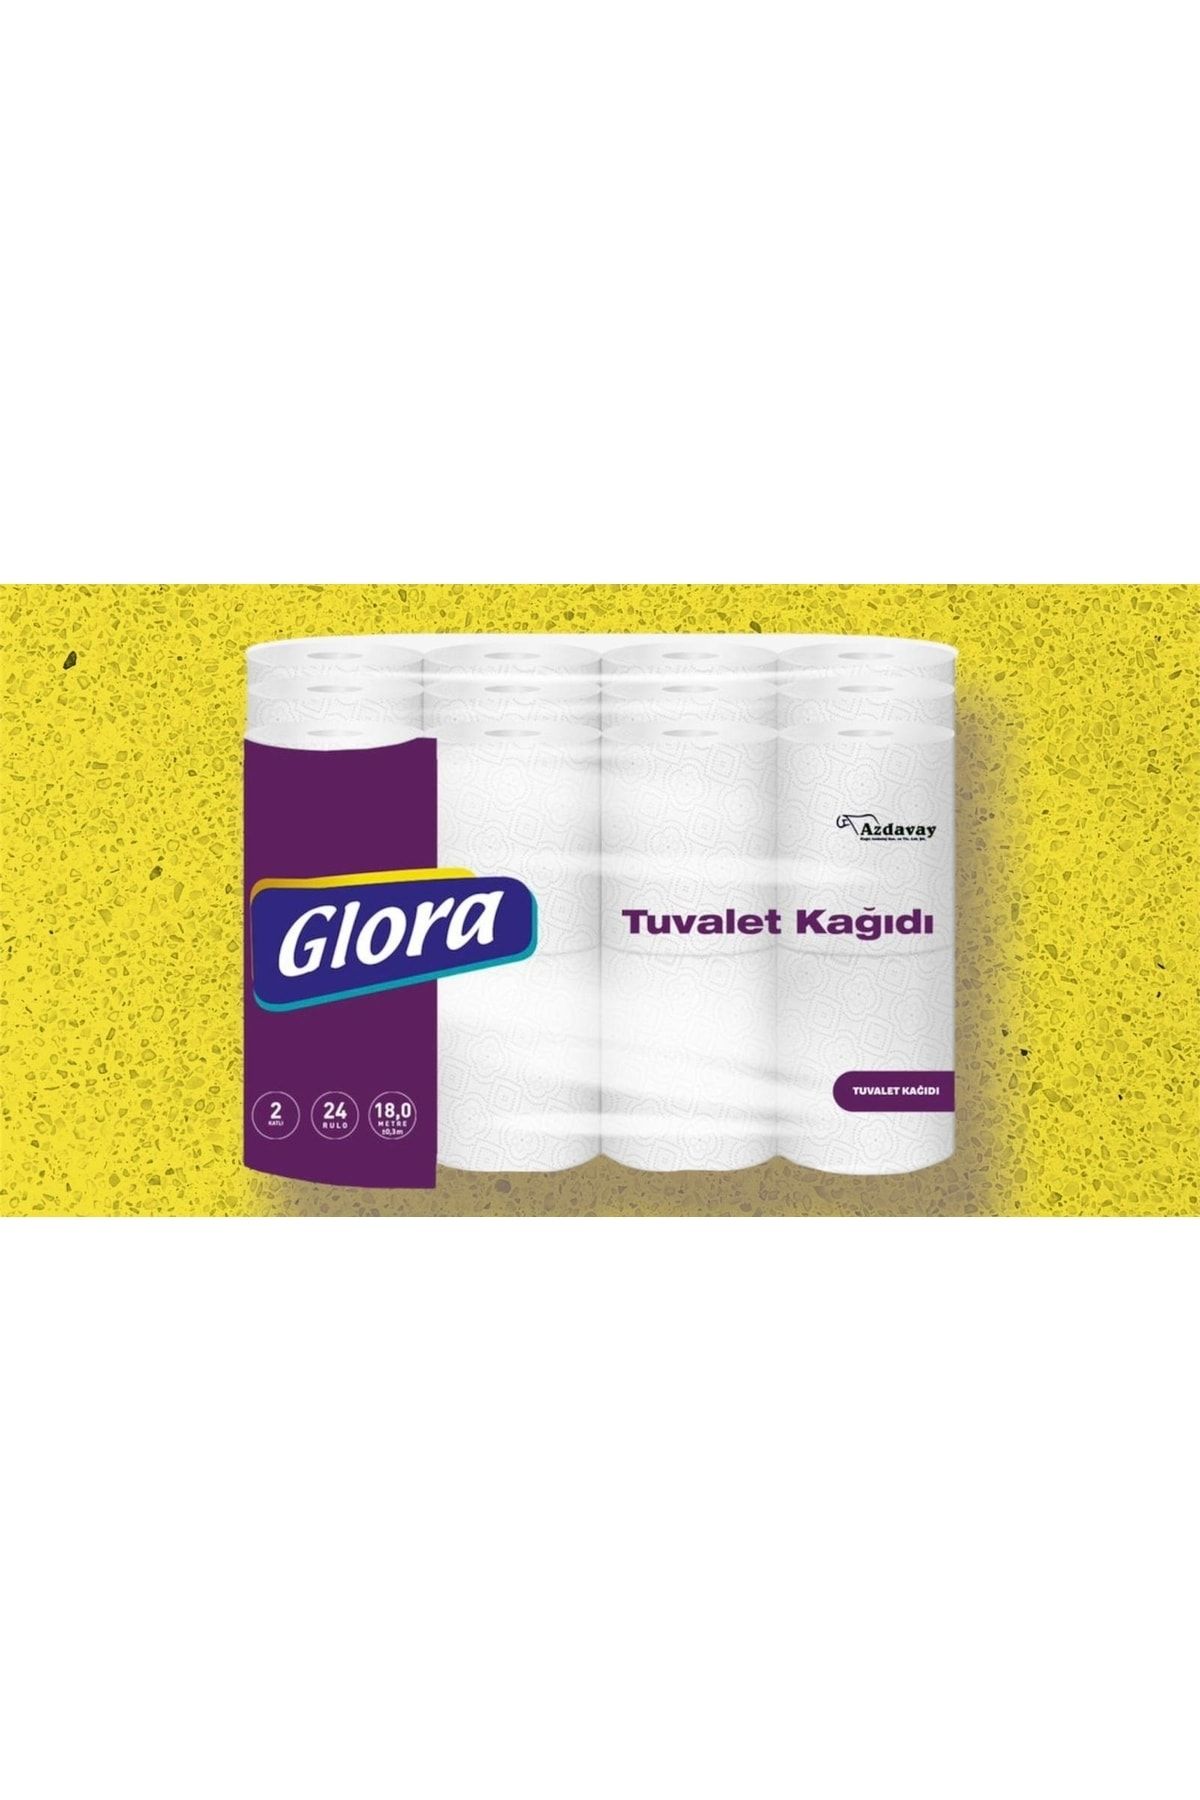 Glora Tuvalet Kağıdı 24 Rulo